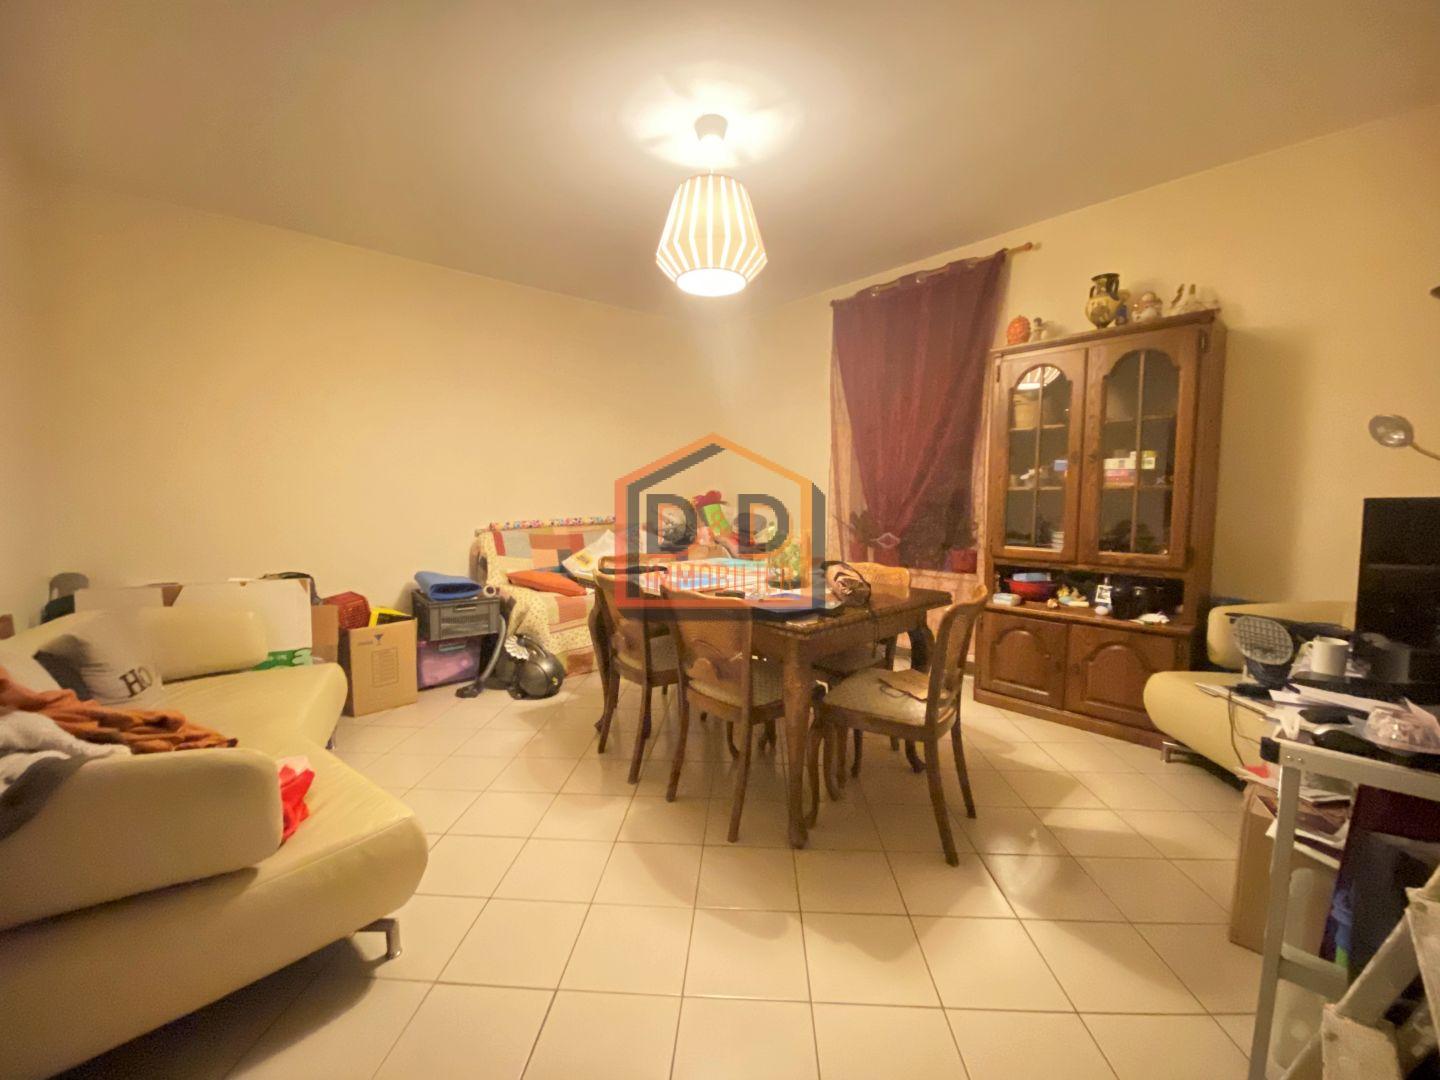 Appartement à Dudelange, 77 m², 2 chambres, 1 salle de bain, 1 garage, 1 350 €/mois